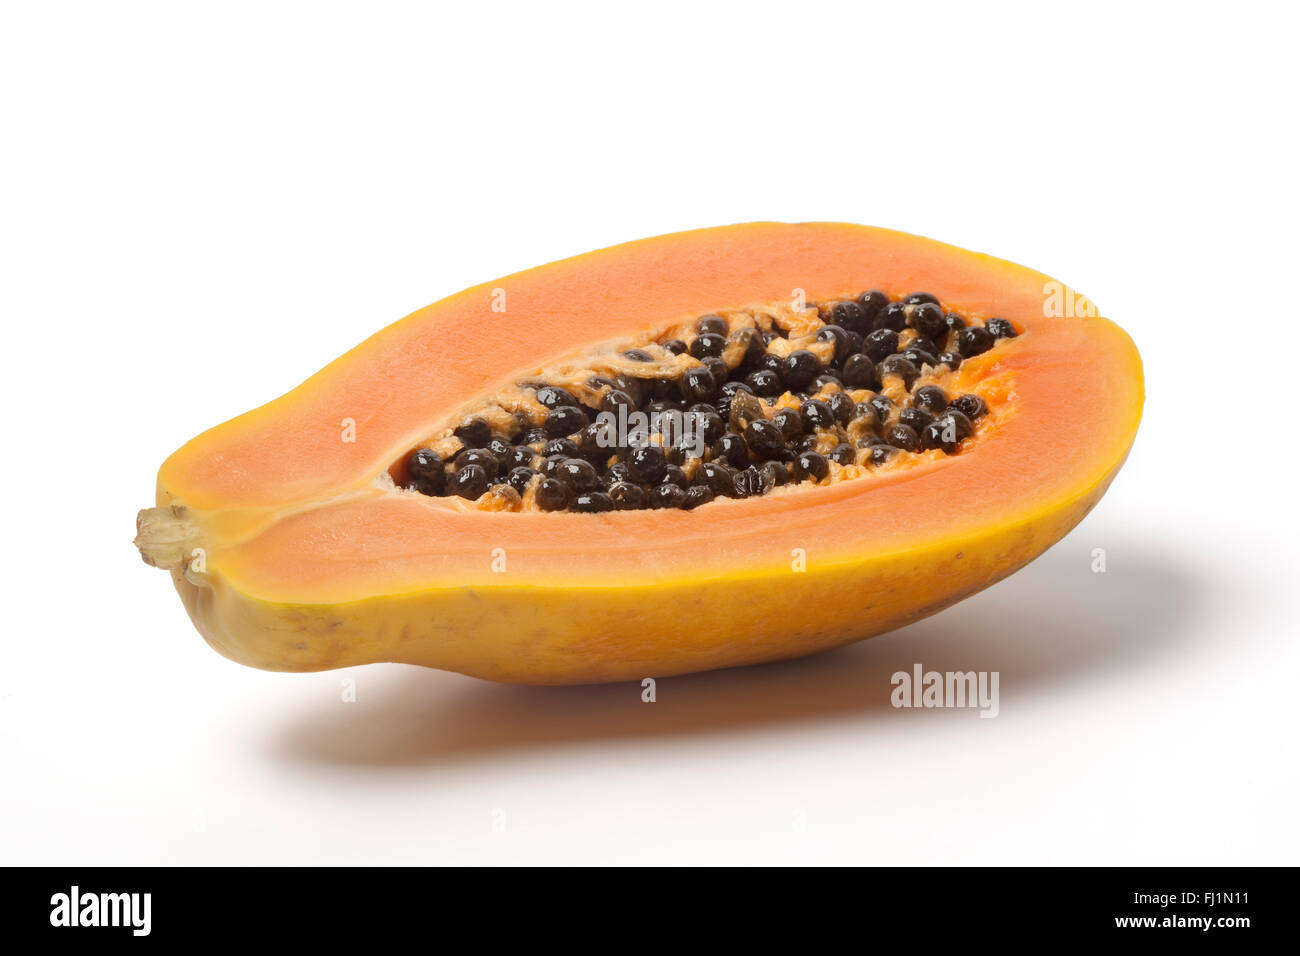 Fresh Half papaya fruit on white background Stock Photo